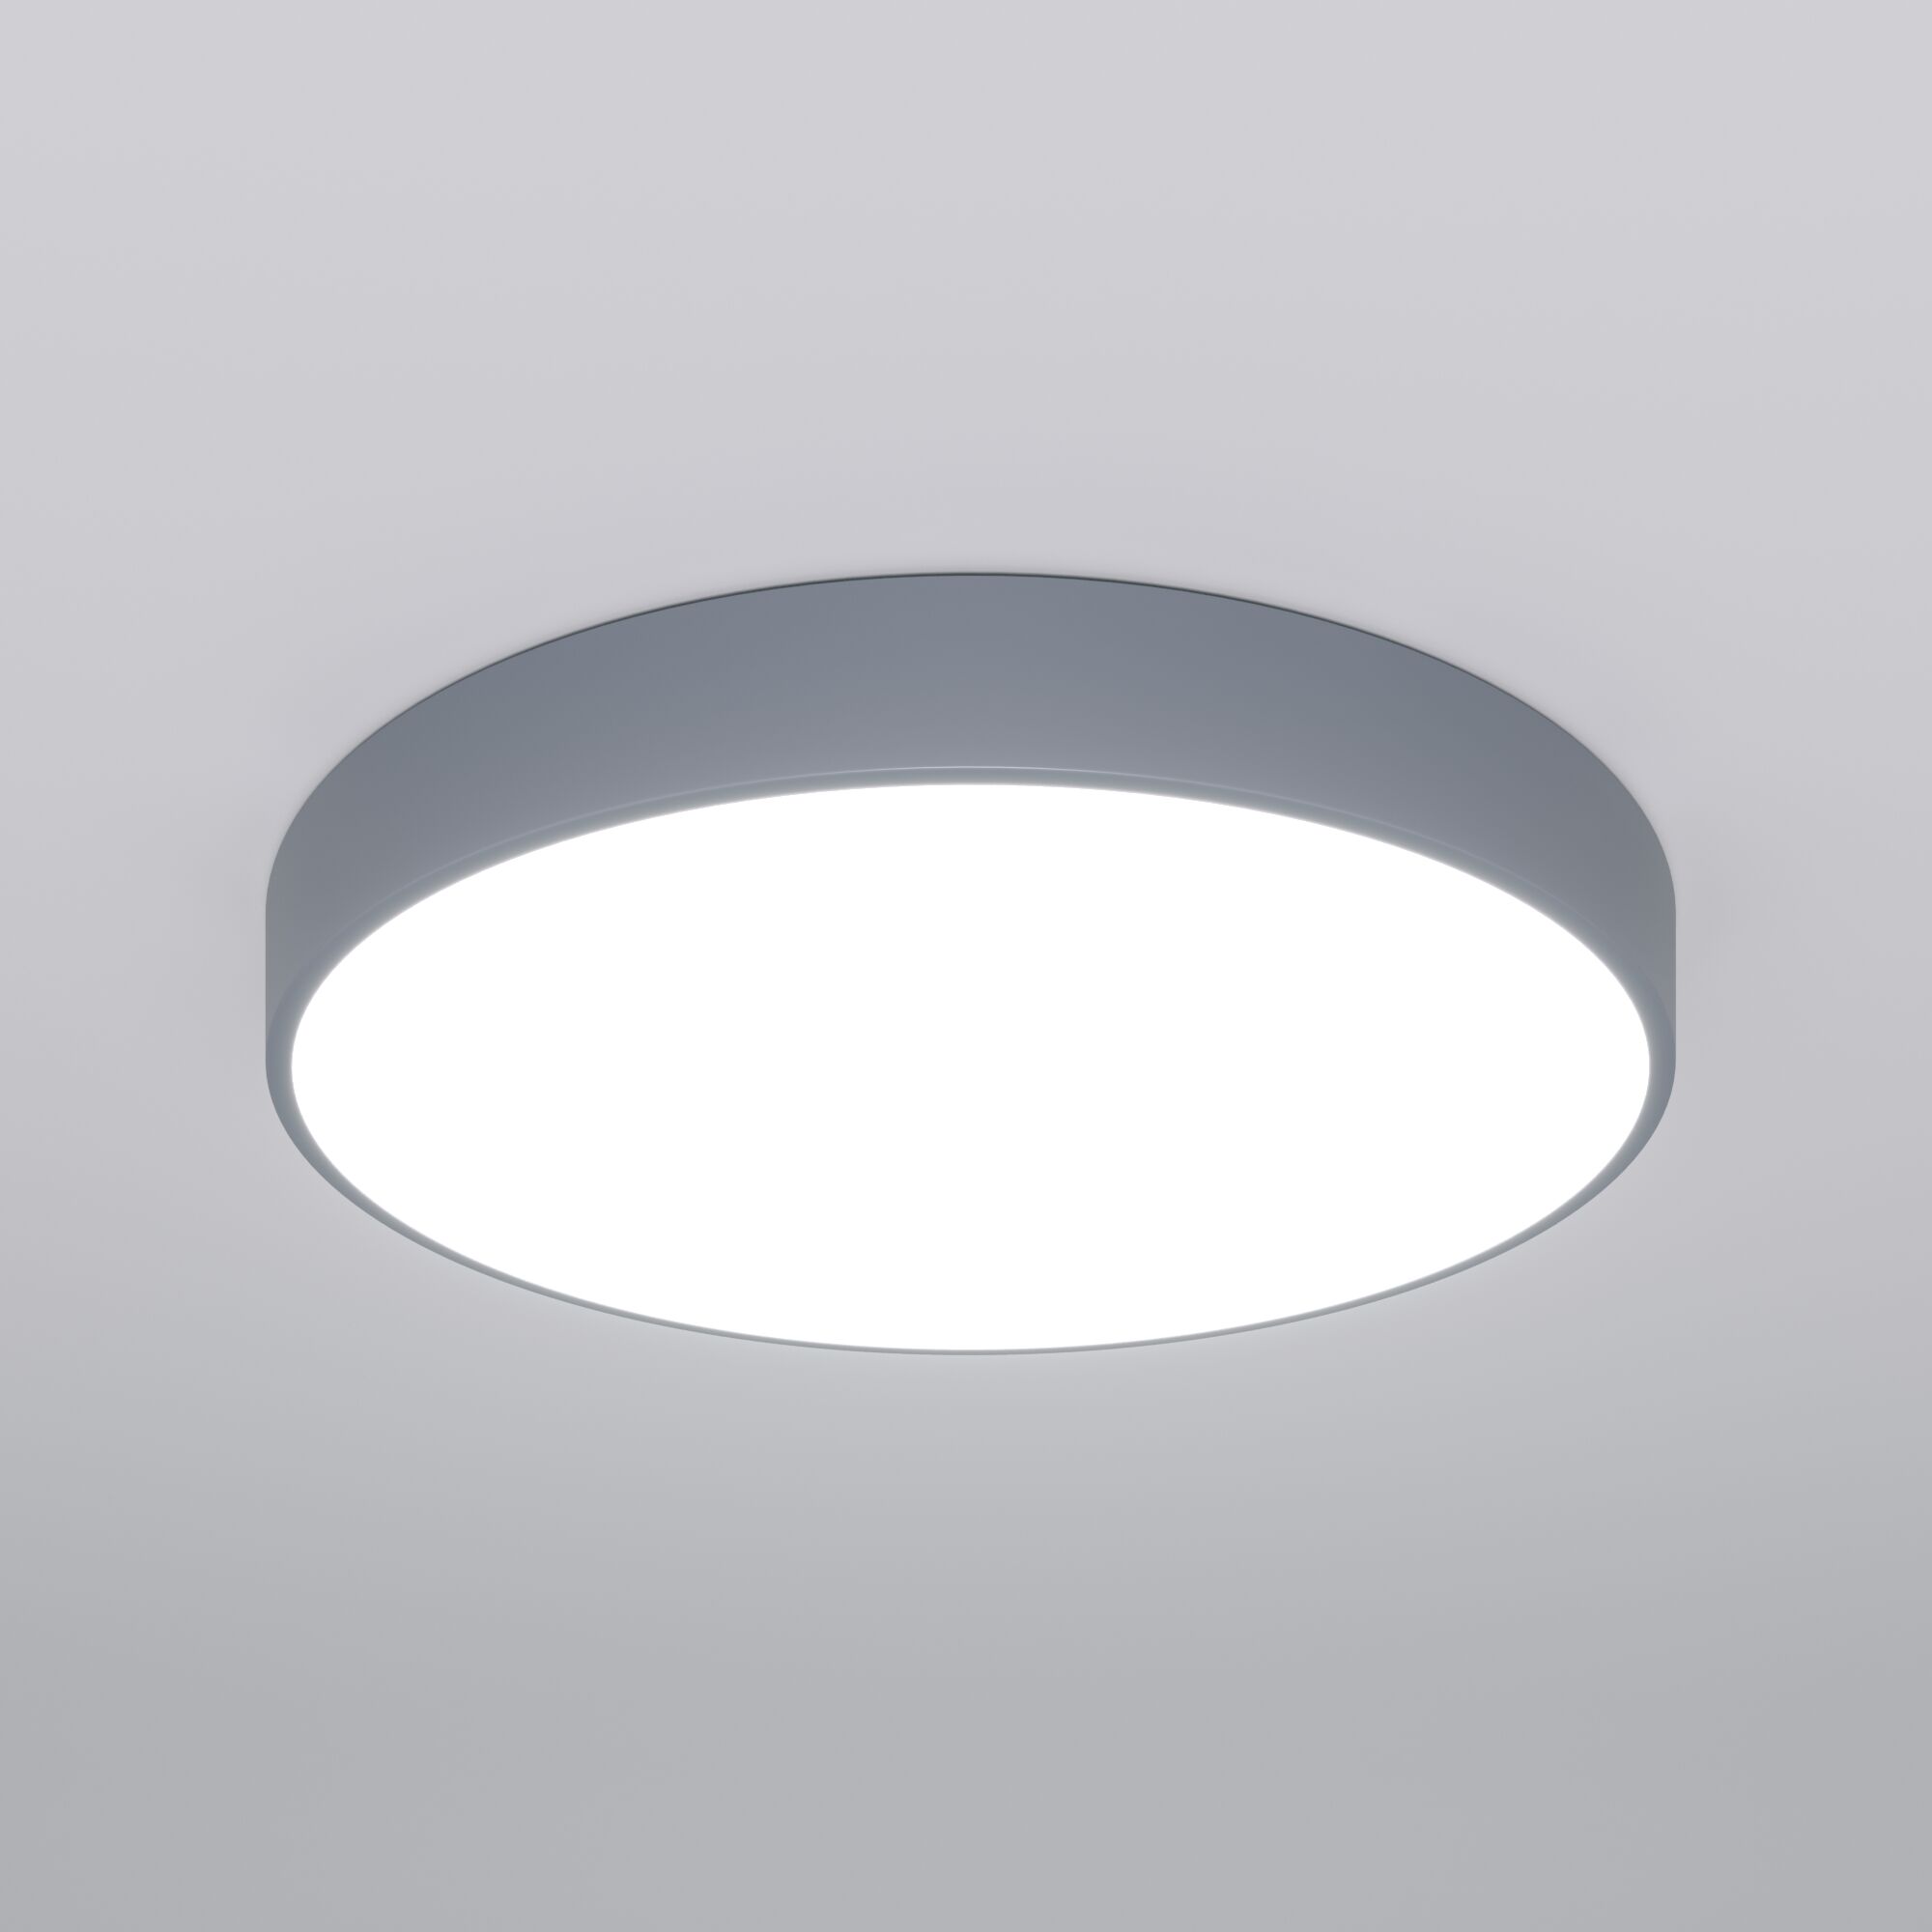 Потолочный светодиодный светильник с регулировкой яркости и цветовой температуры Eurosvet Entire 90320/1 серый. Фото 1